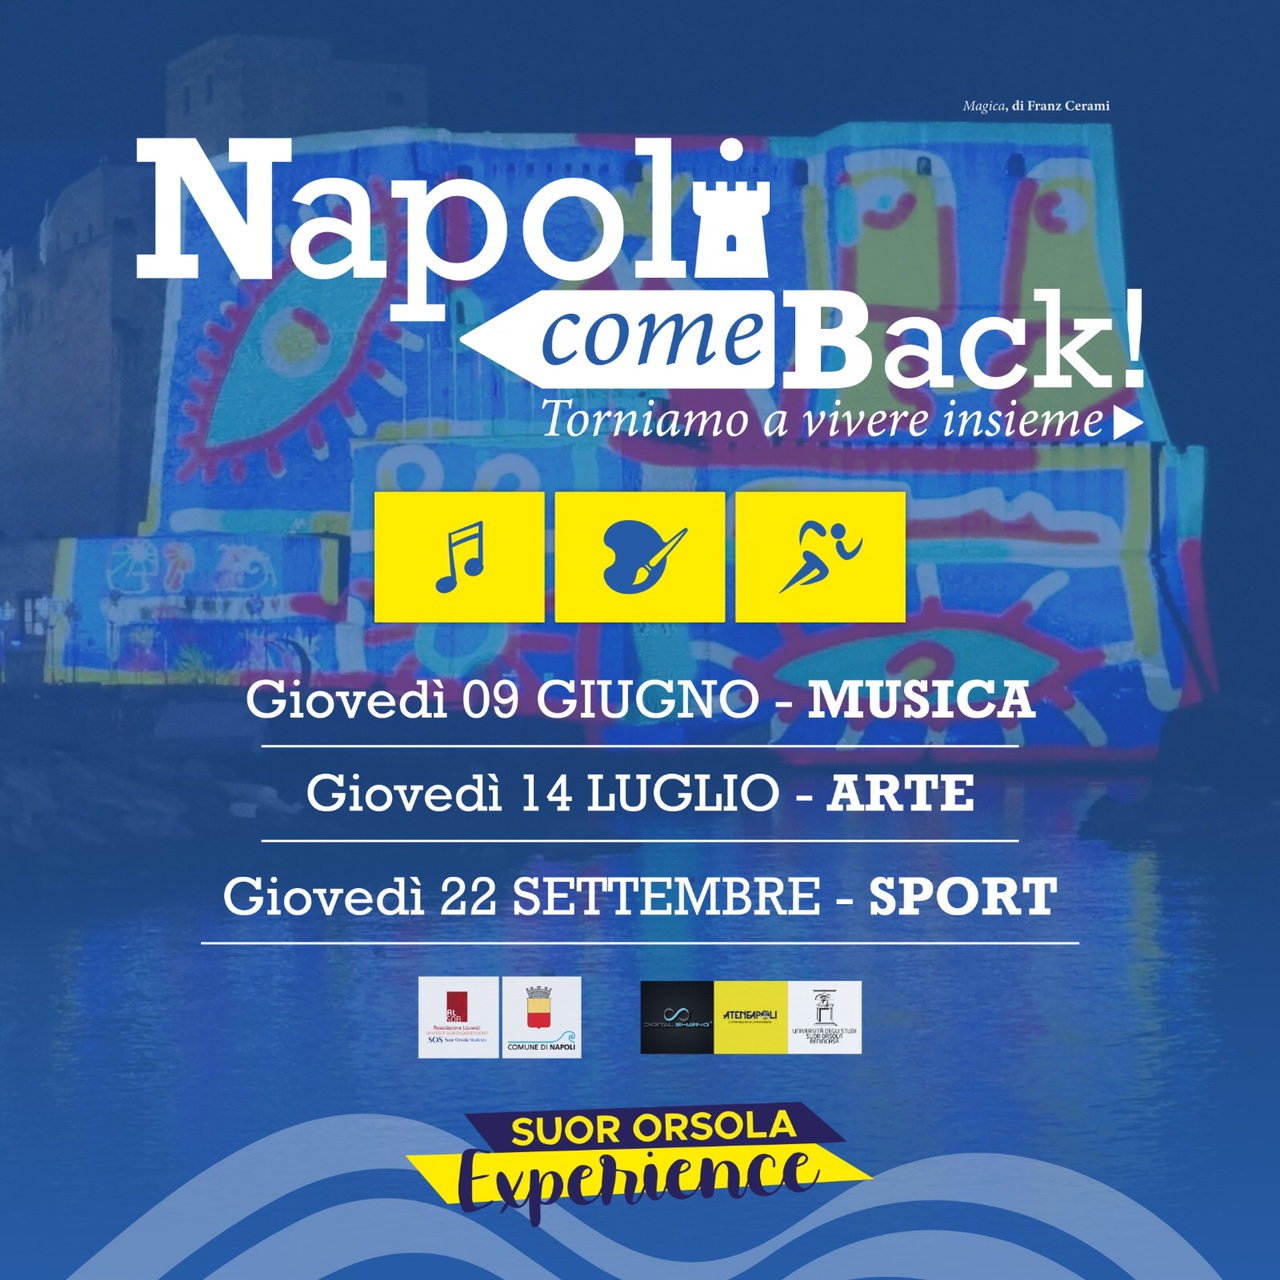 Napoli come back